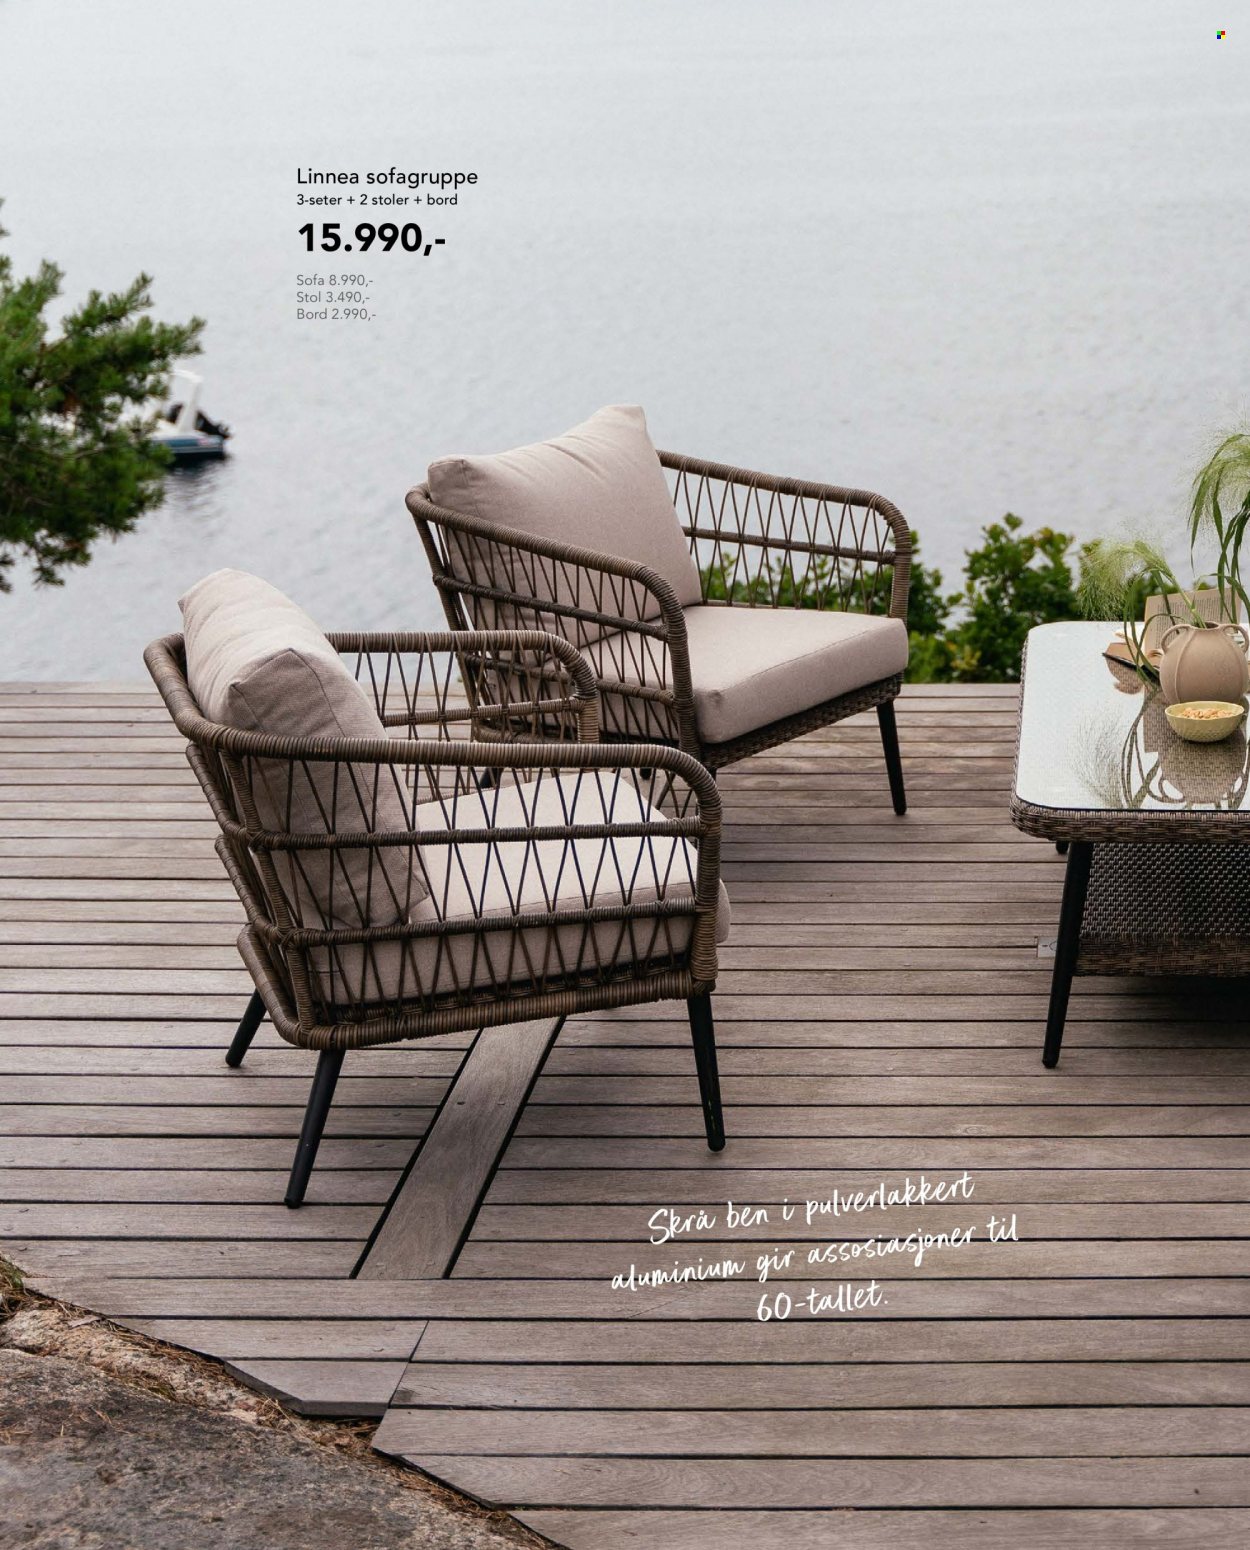 Kundeavis Hageland - Produkter fra tilbudsaviser - bord, stol, sofa. Side 32.